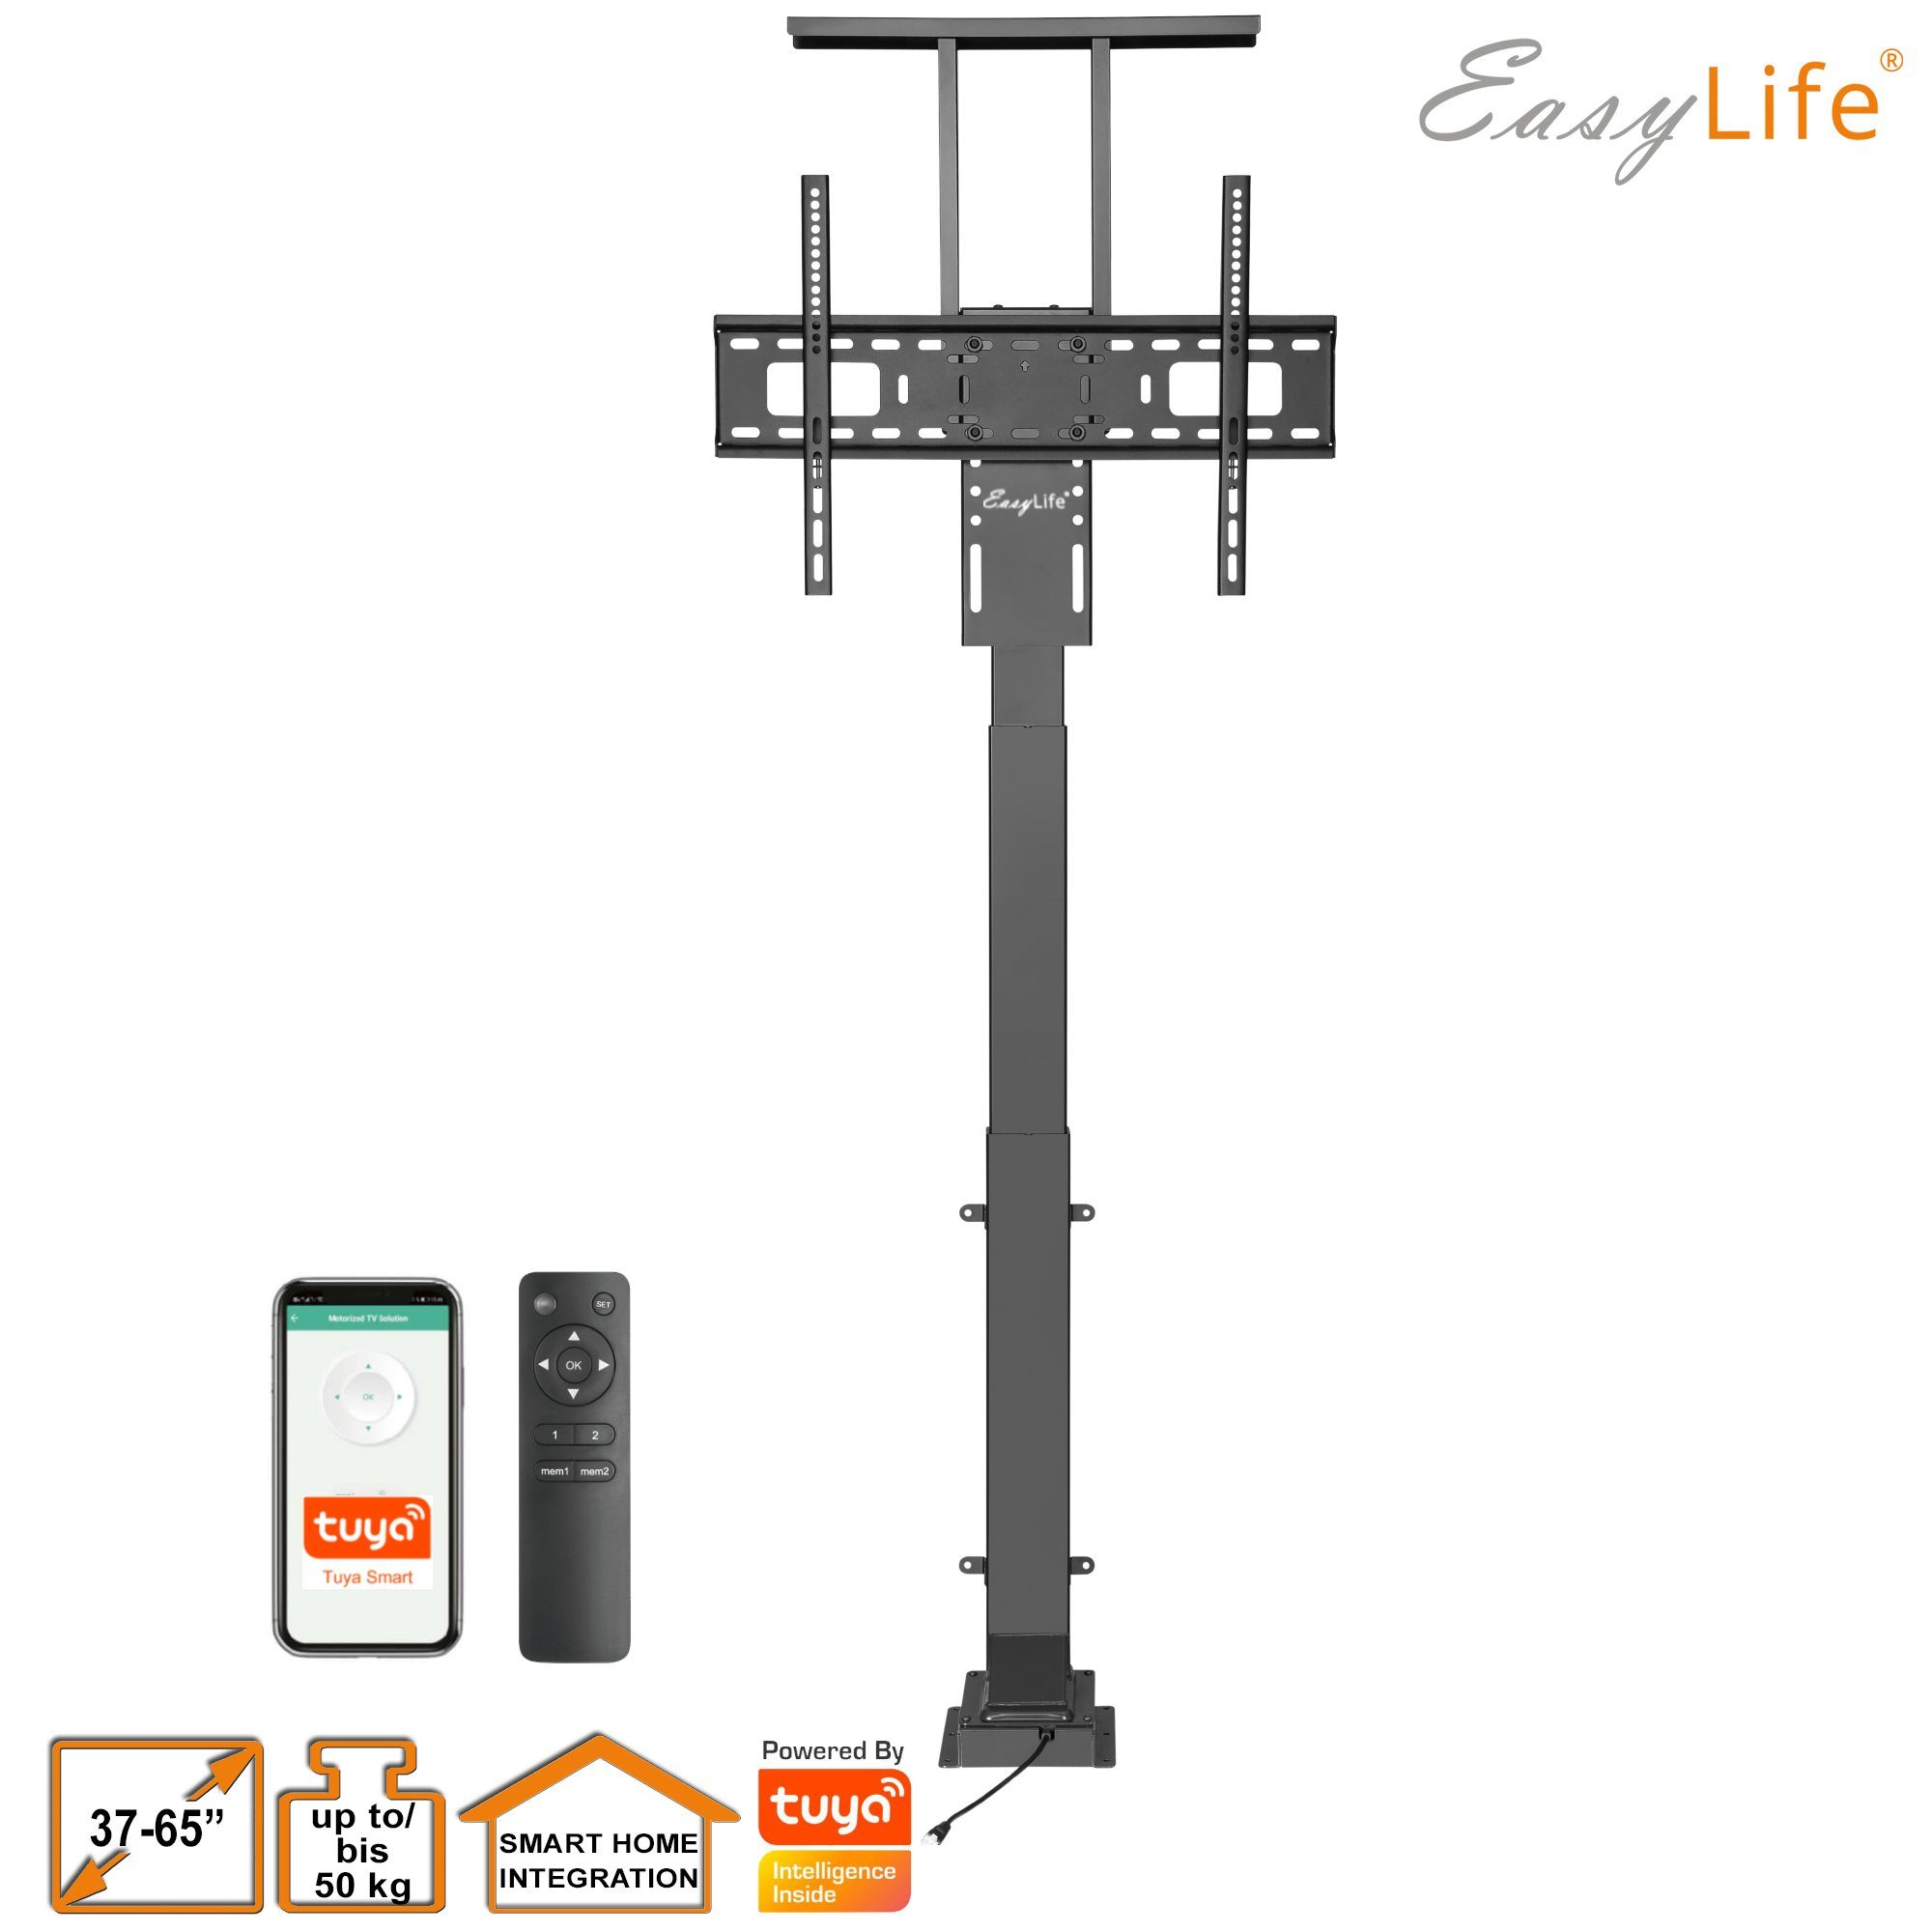 & Home elektrisch, Fernbedienung TV Smart TV-Ständer Bodenständer Lift/ Steuerung easylife